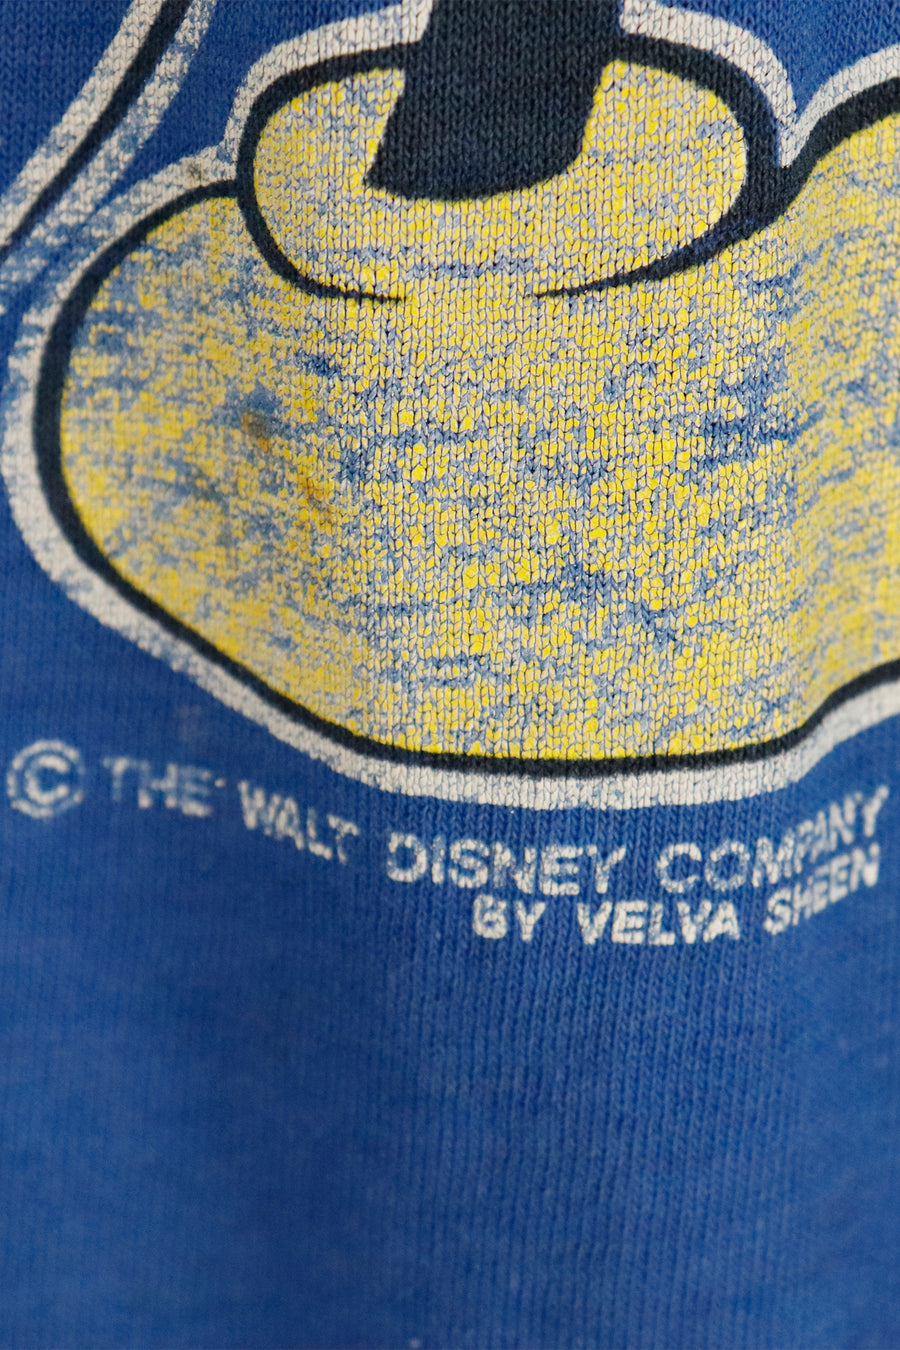 Vintage Florida Mickey Mouse T Shirt Sz L